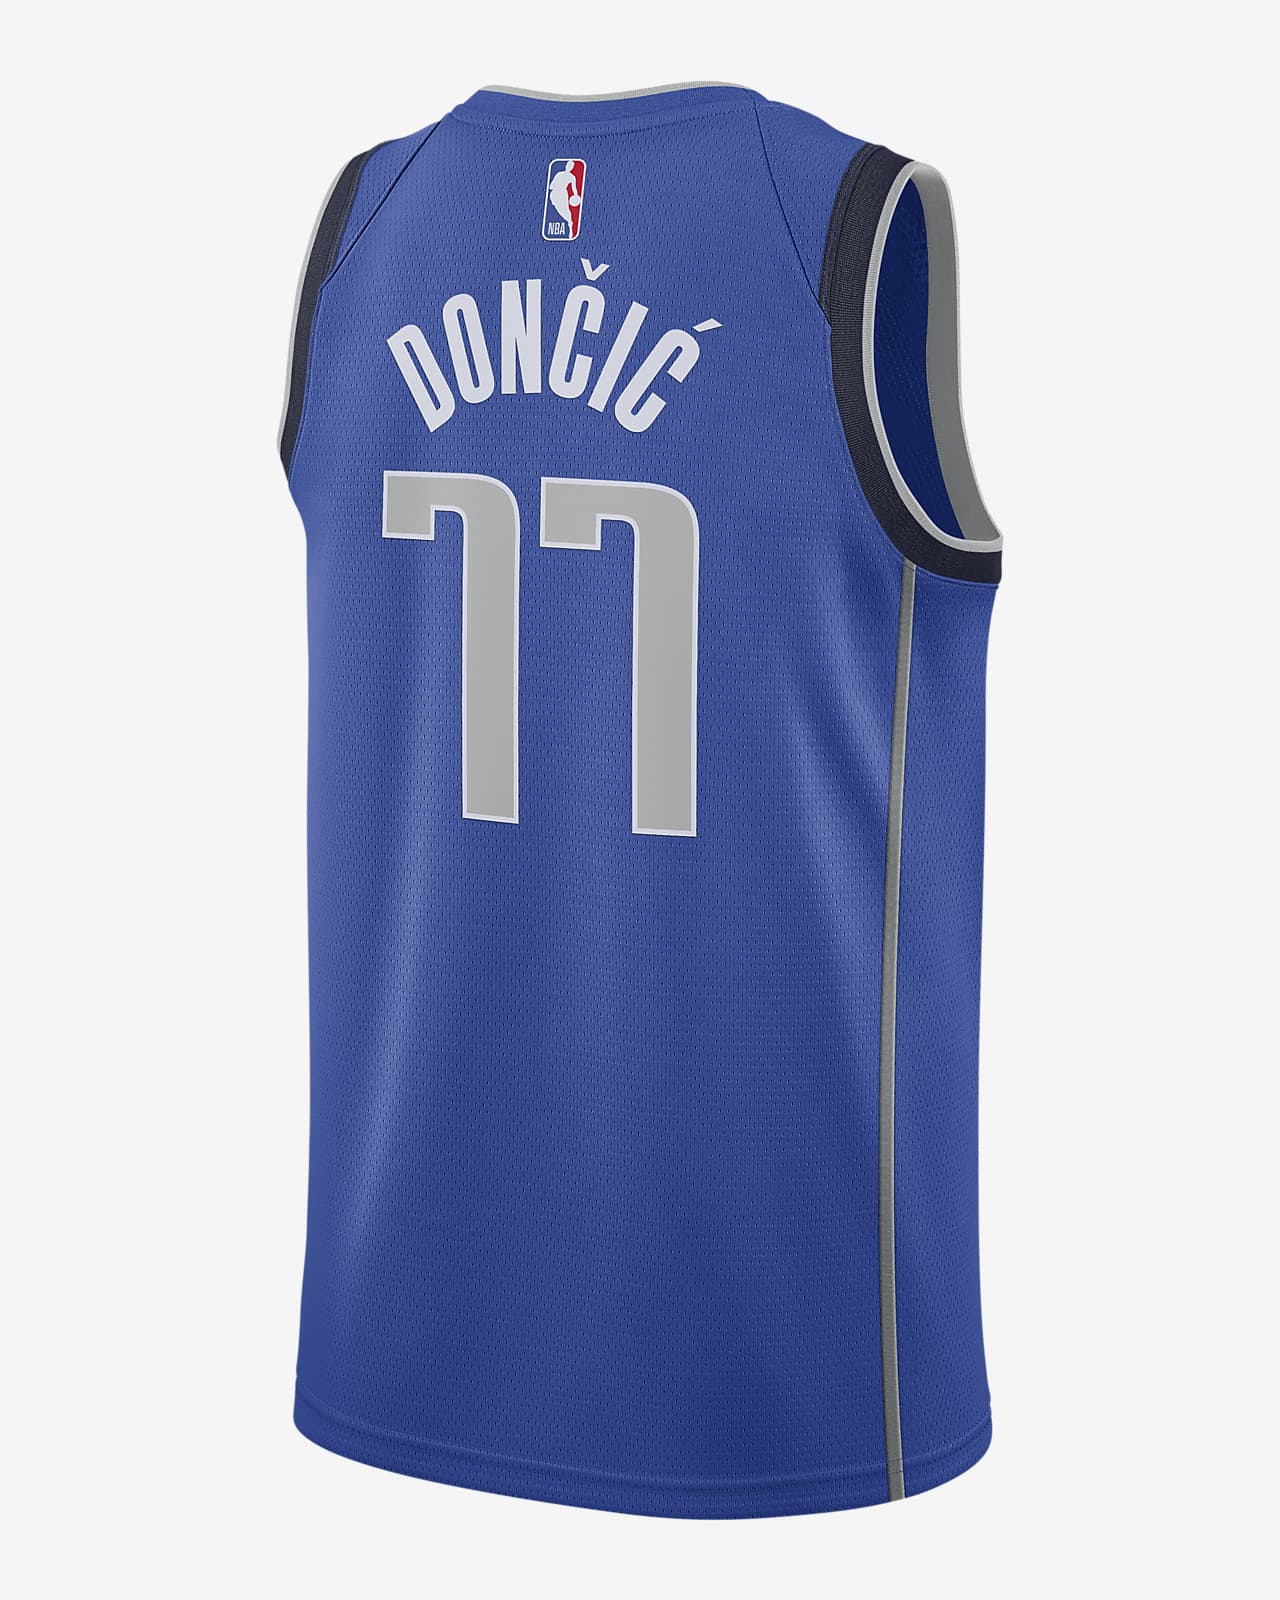 Luka Dončić Mavericks Icon Edition 2020 Nike NBA Swingman Jersey. Nike BG